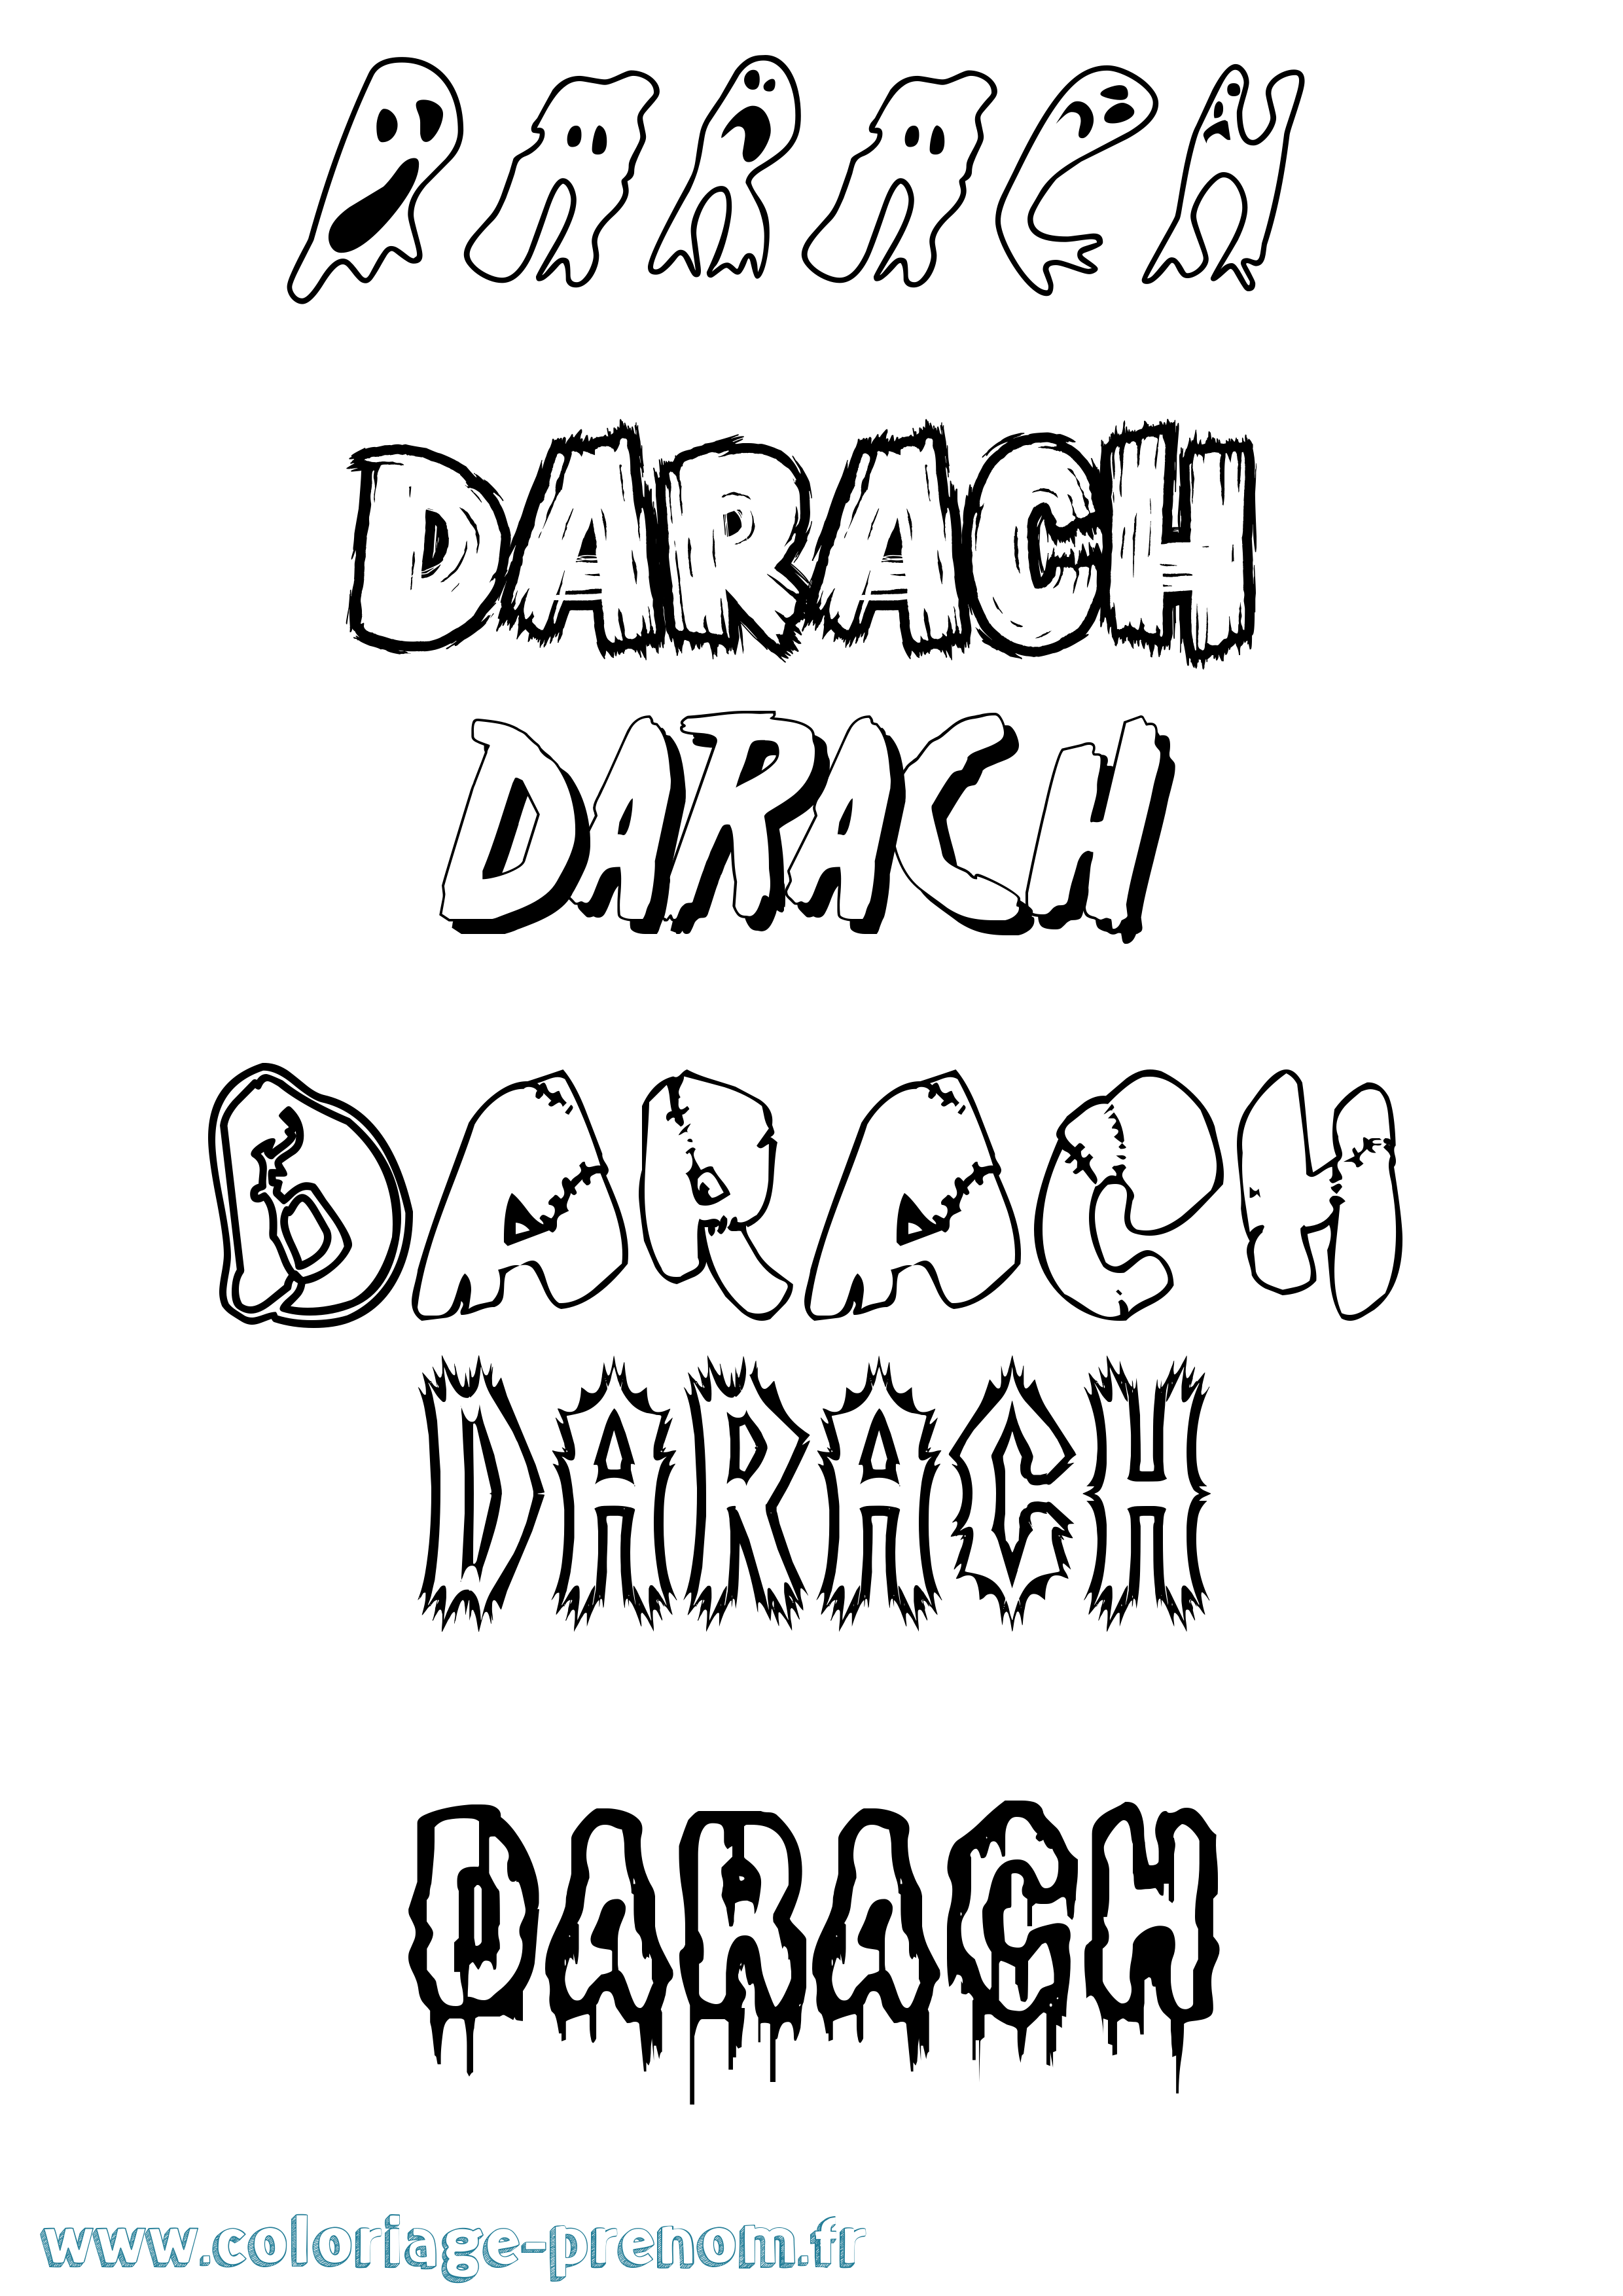 Coloriage prénom Darach Frisson